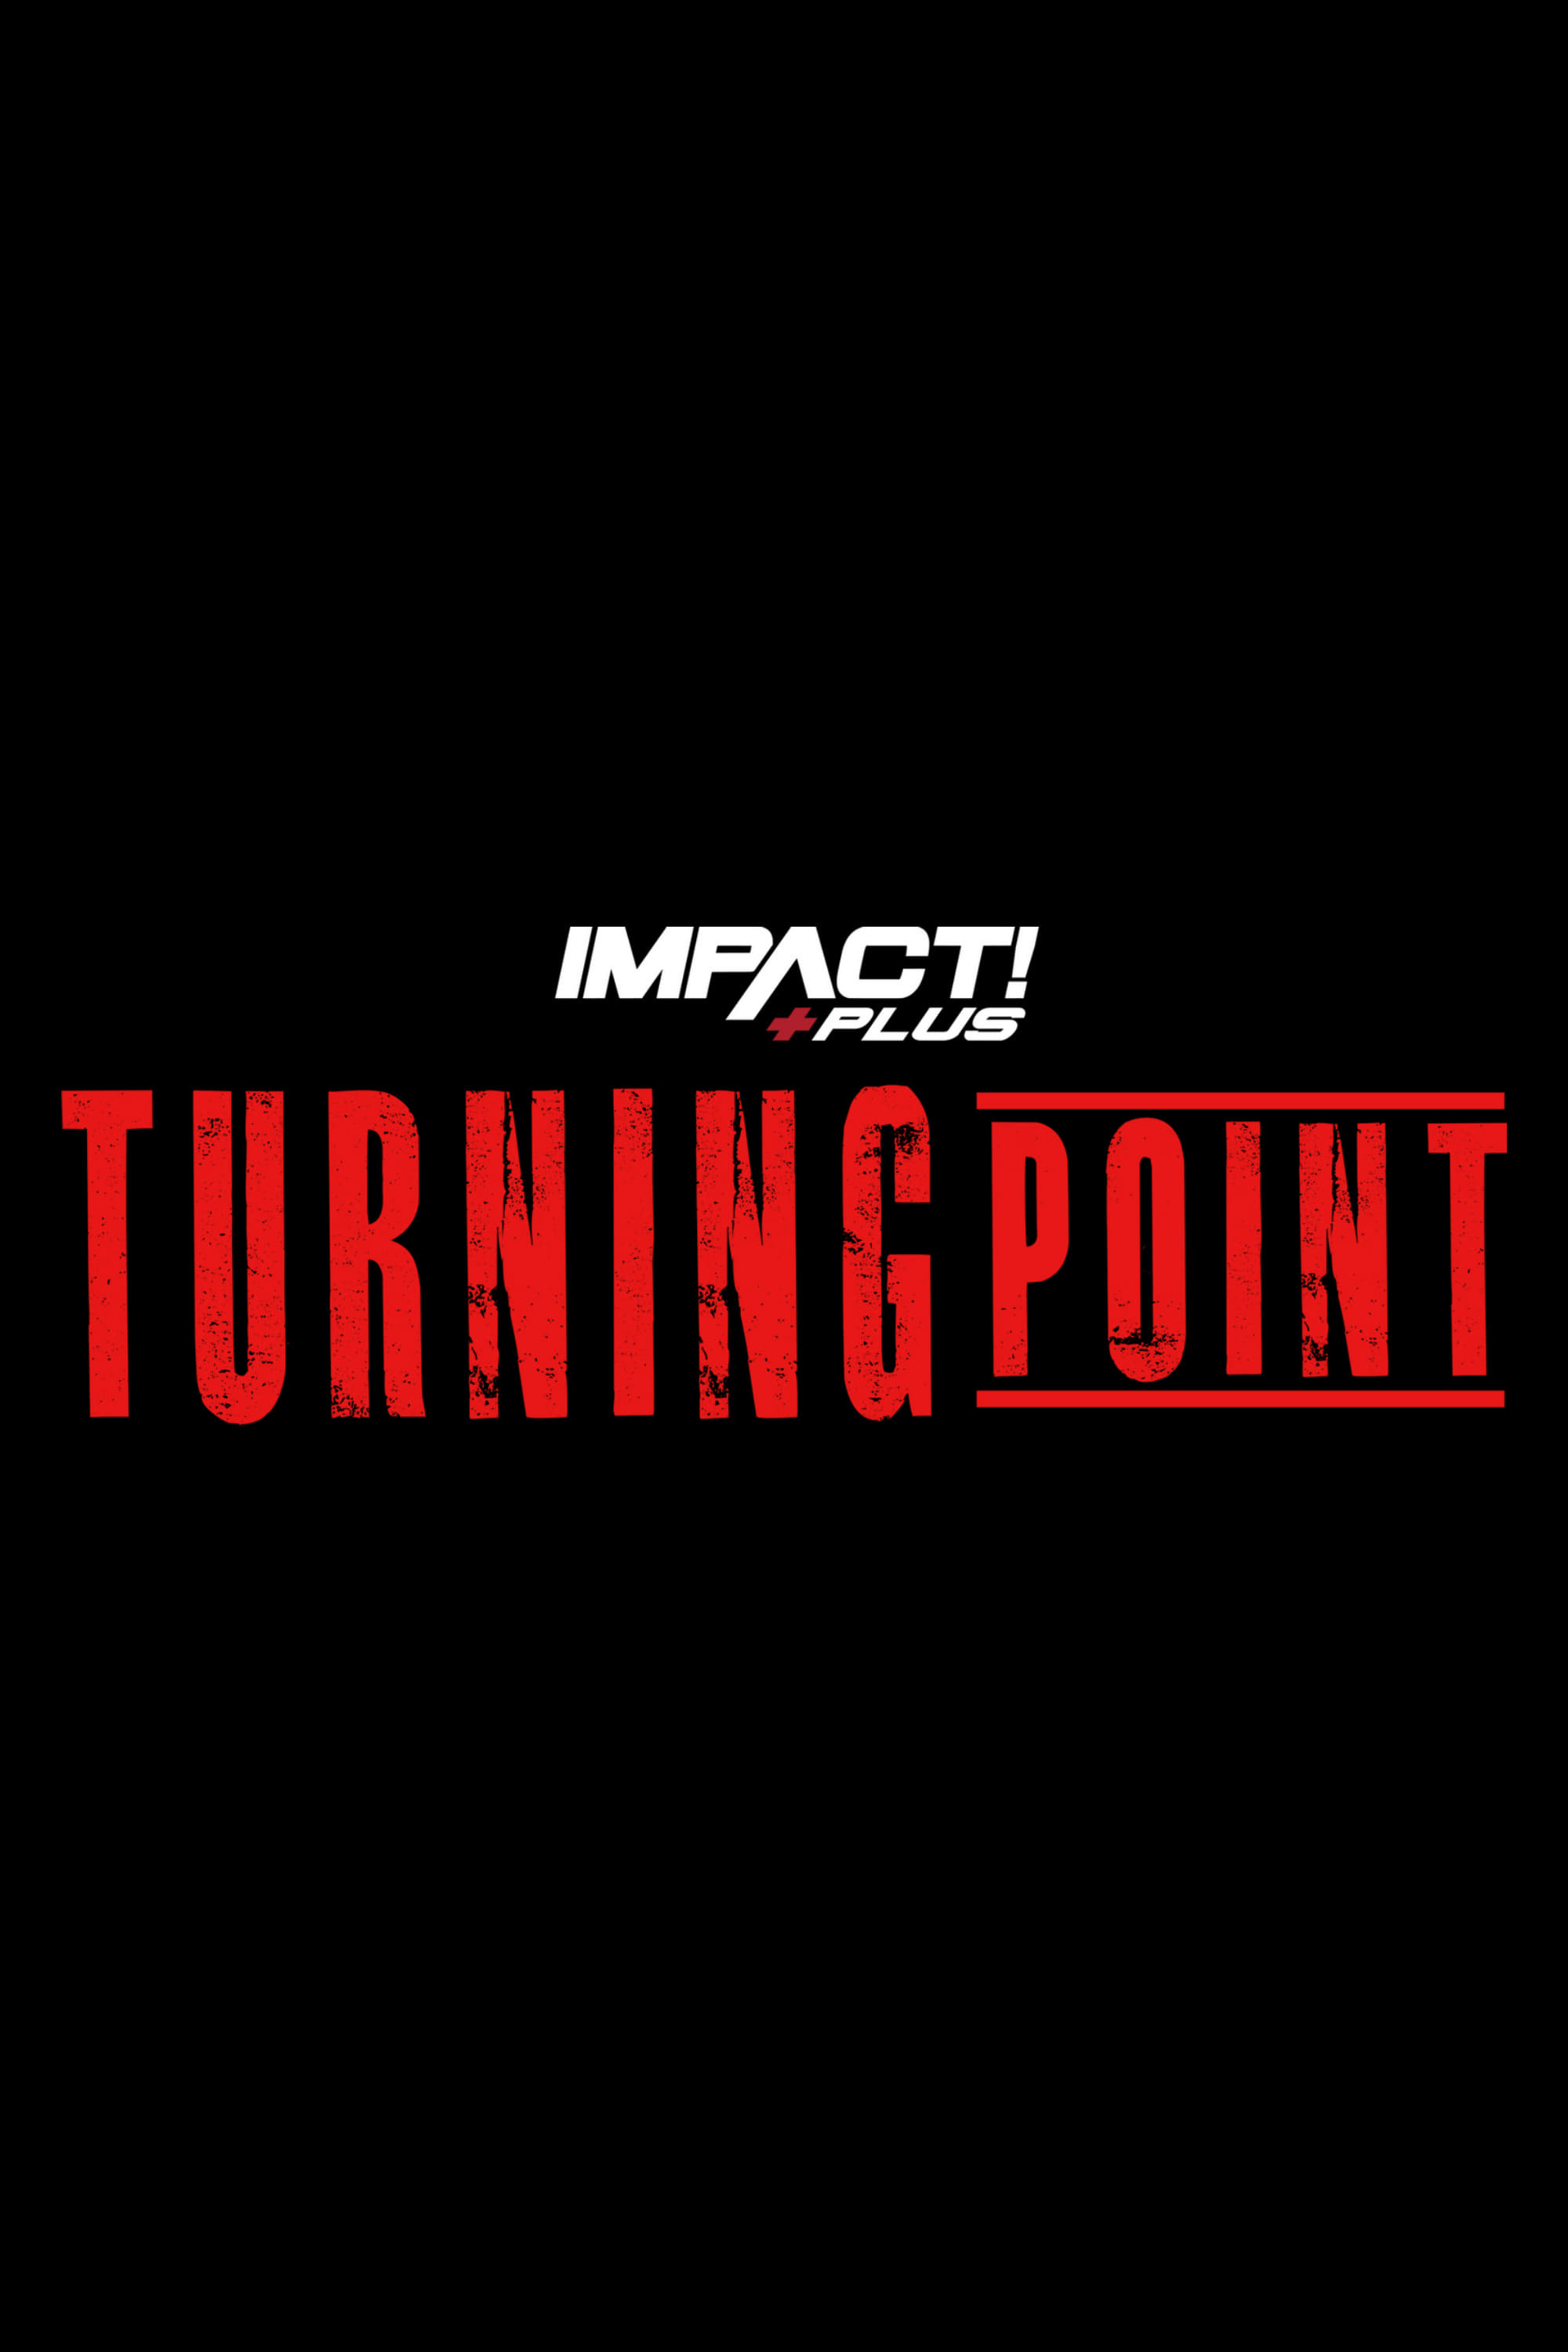 IMPACT Wrestling: Turning Point 2021